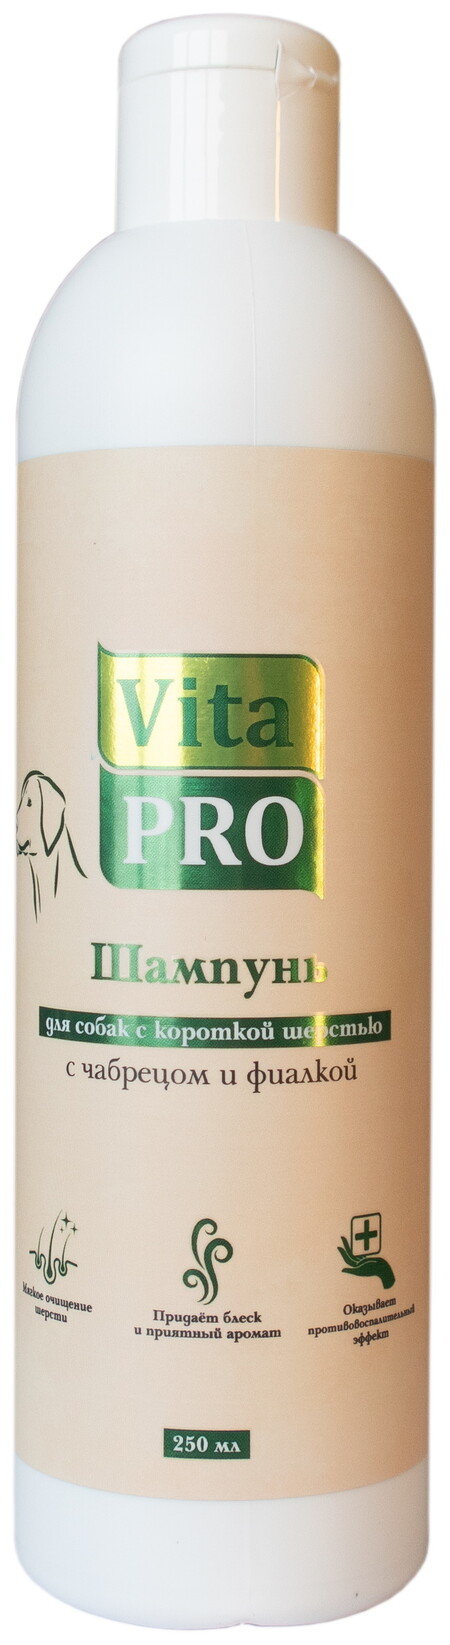 Vita Pro 250 мл шампунь для собак с короткой/жесткой шерстью с чабрецом и фиалкой